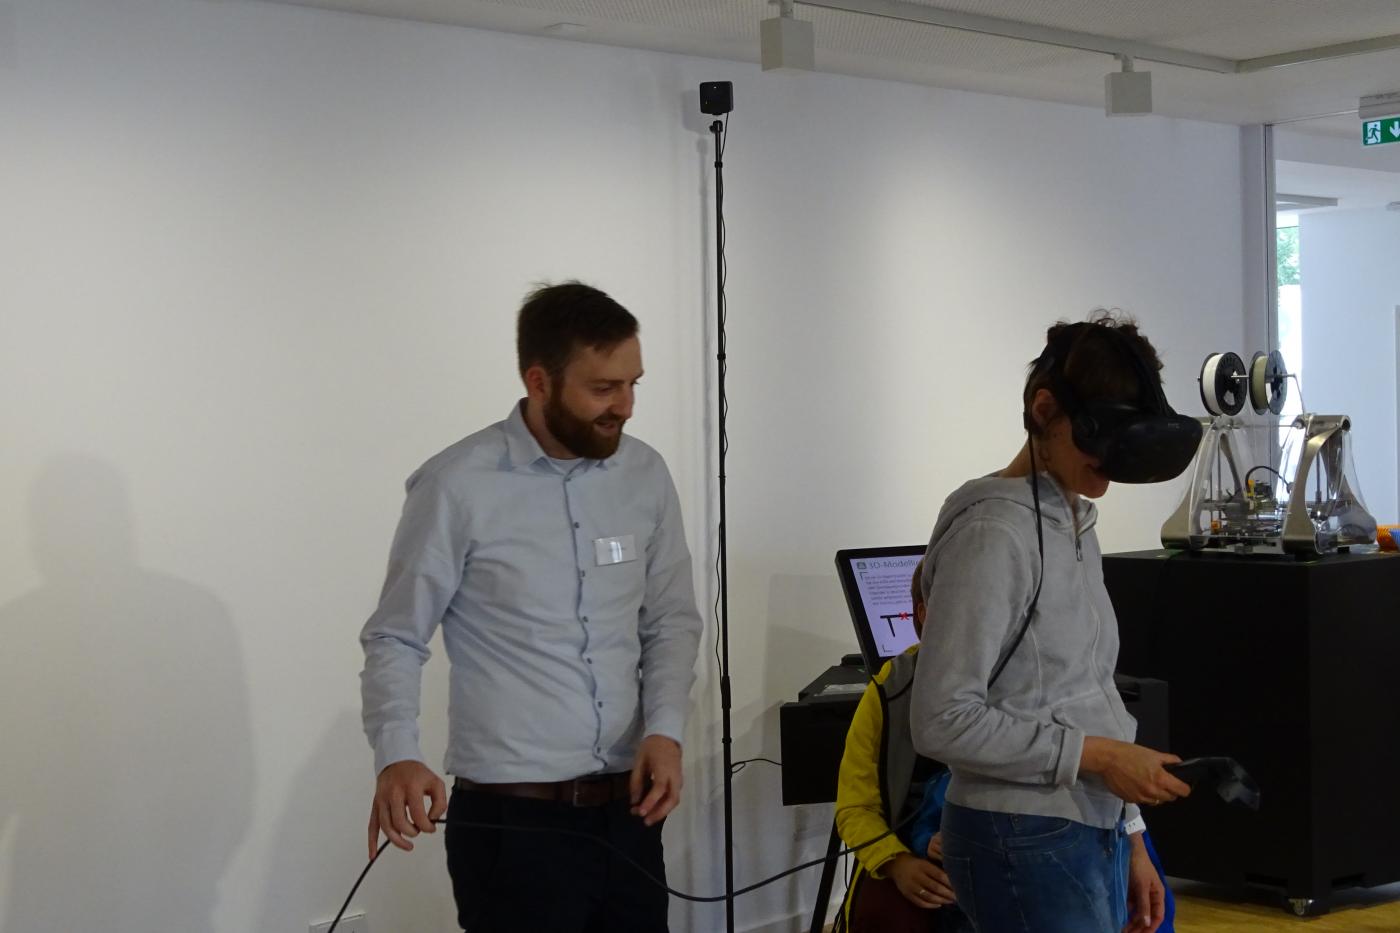 Mitarbeiter Ralf Endres begeistert Besucher mit der VR-Brille